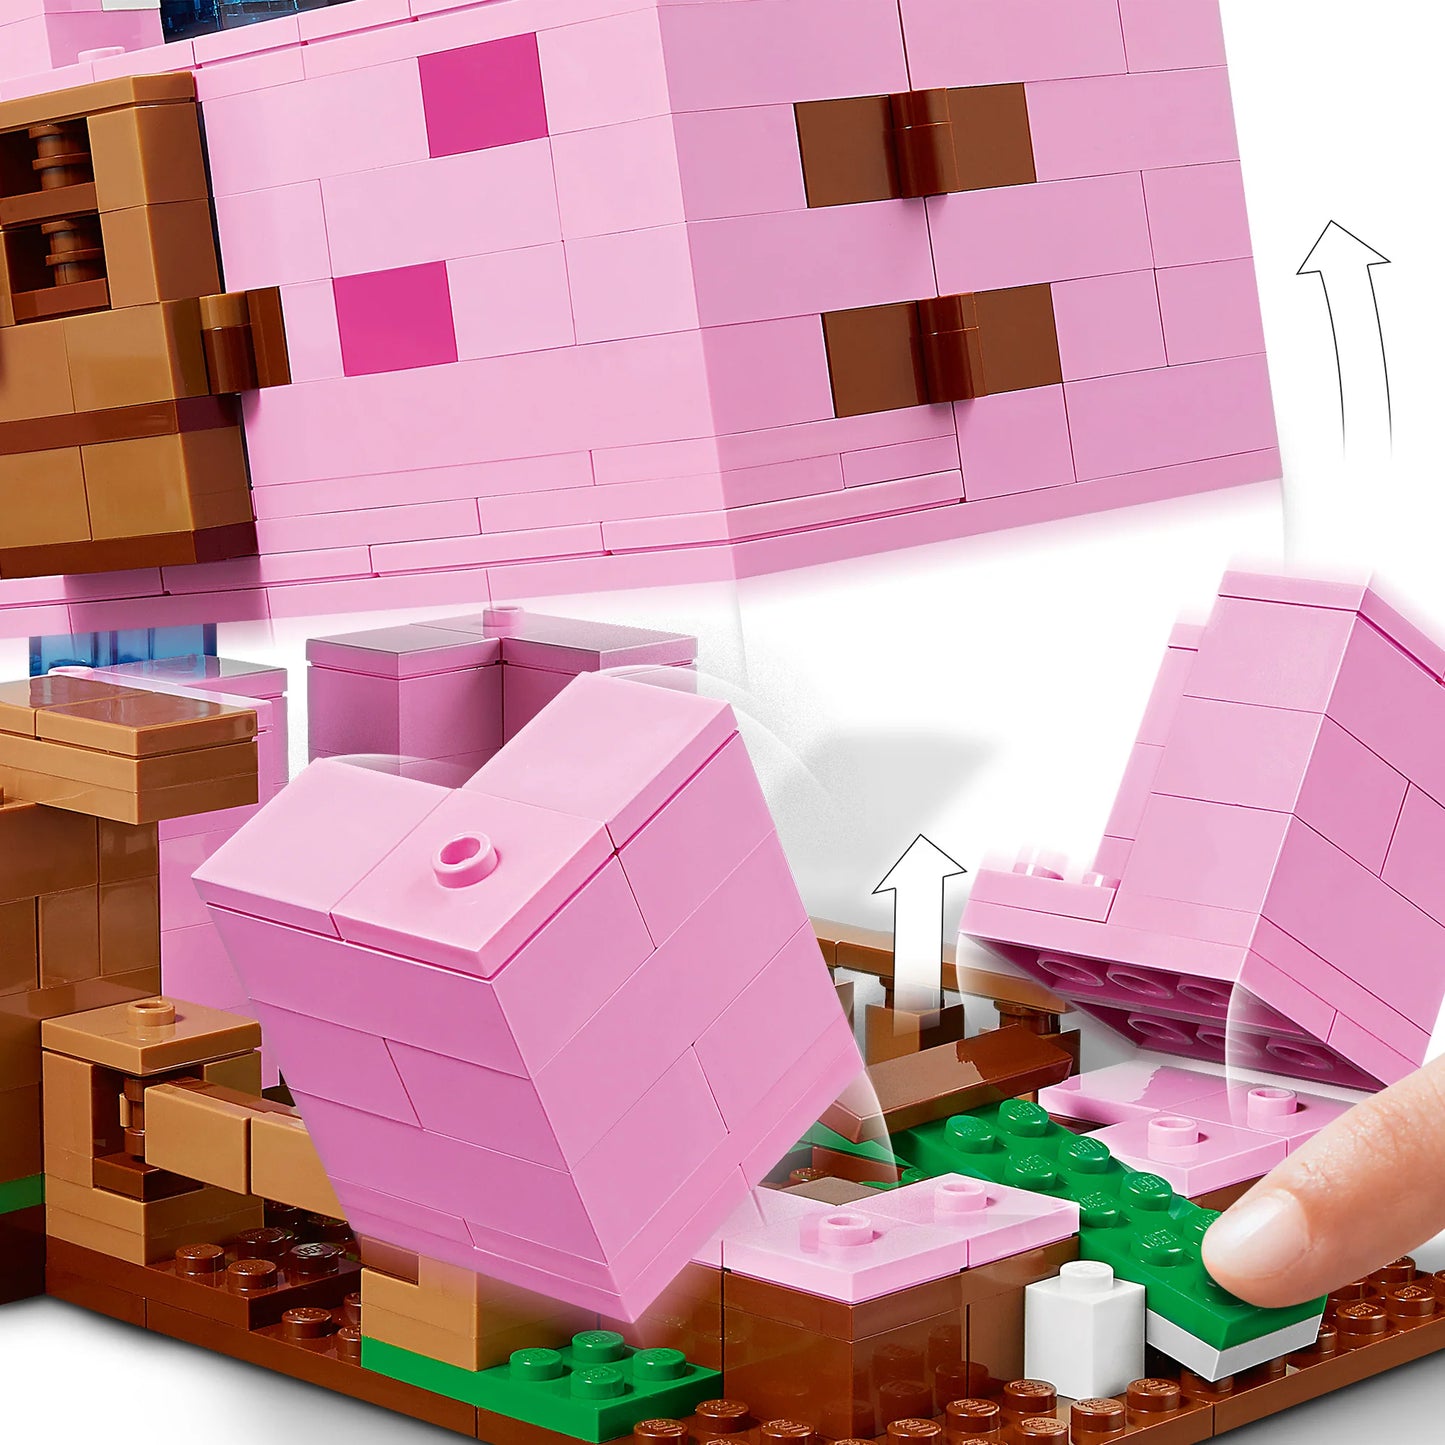 Het Varkenshuis-LEGO Minecraft